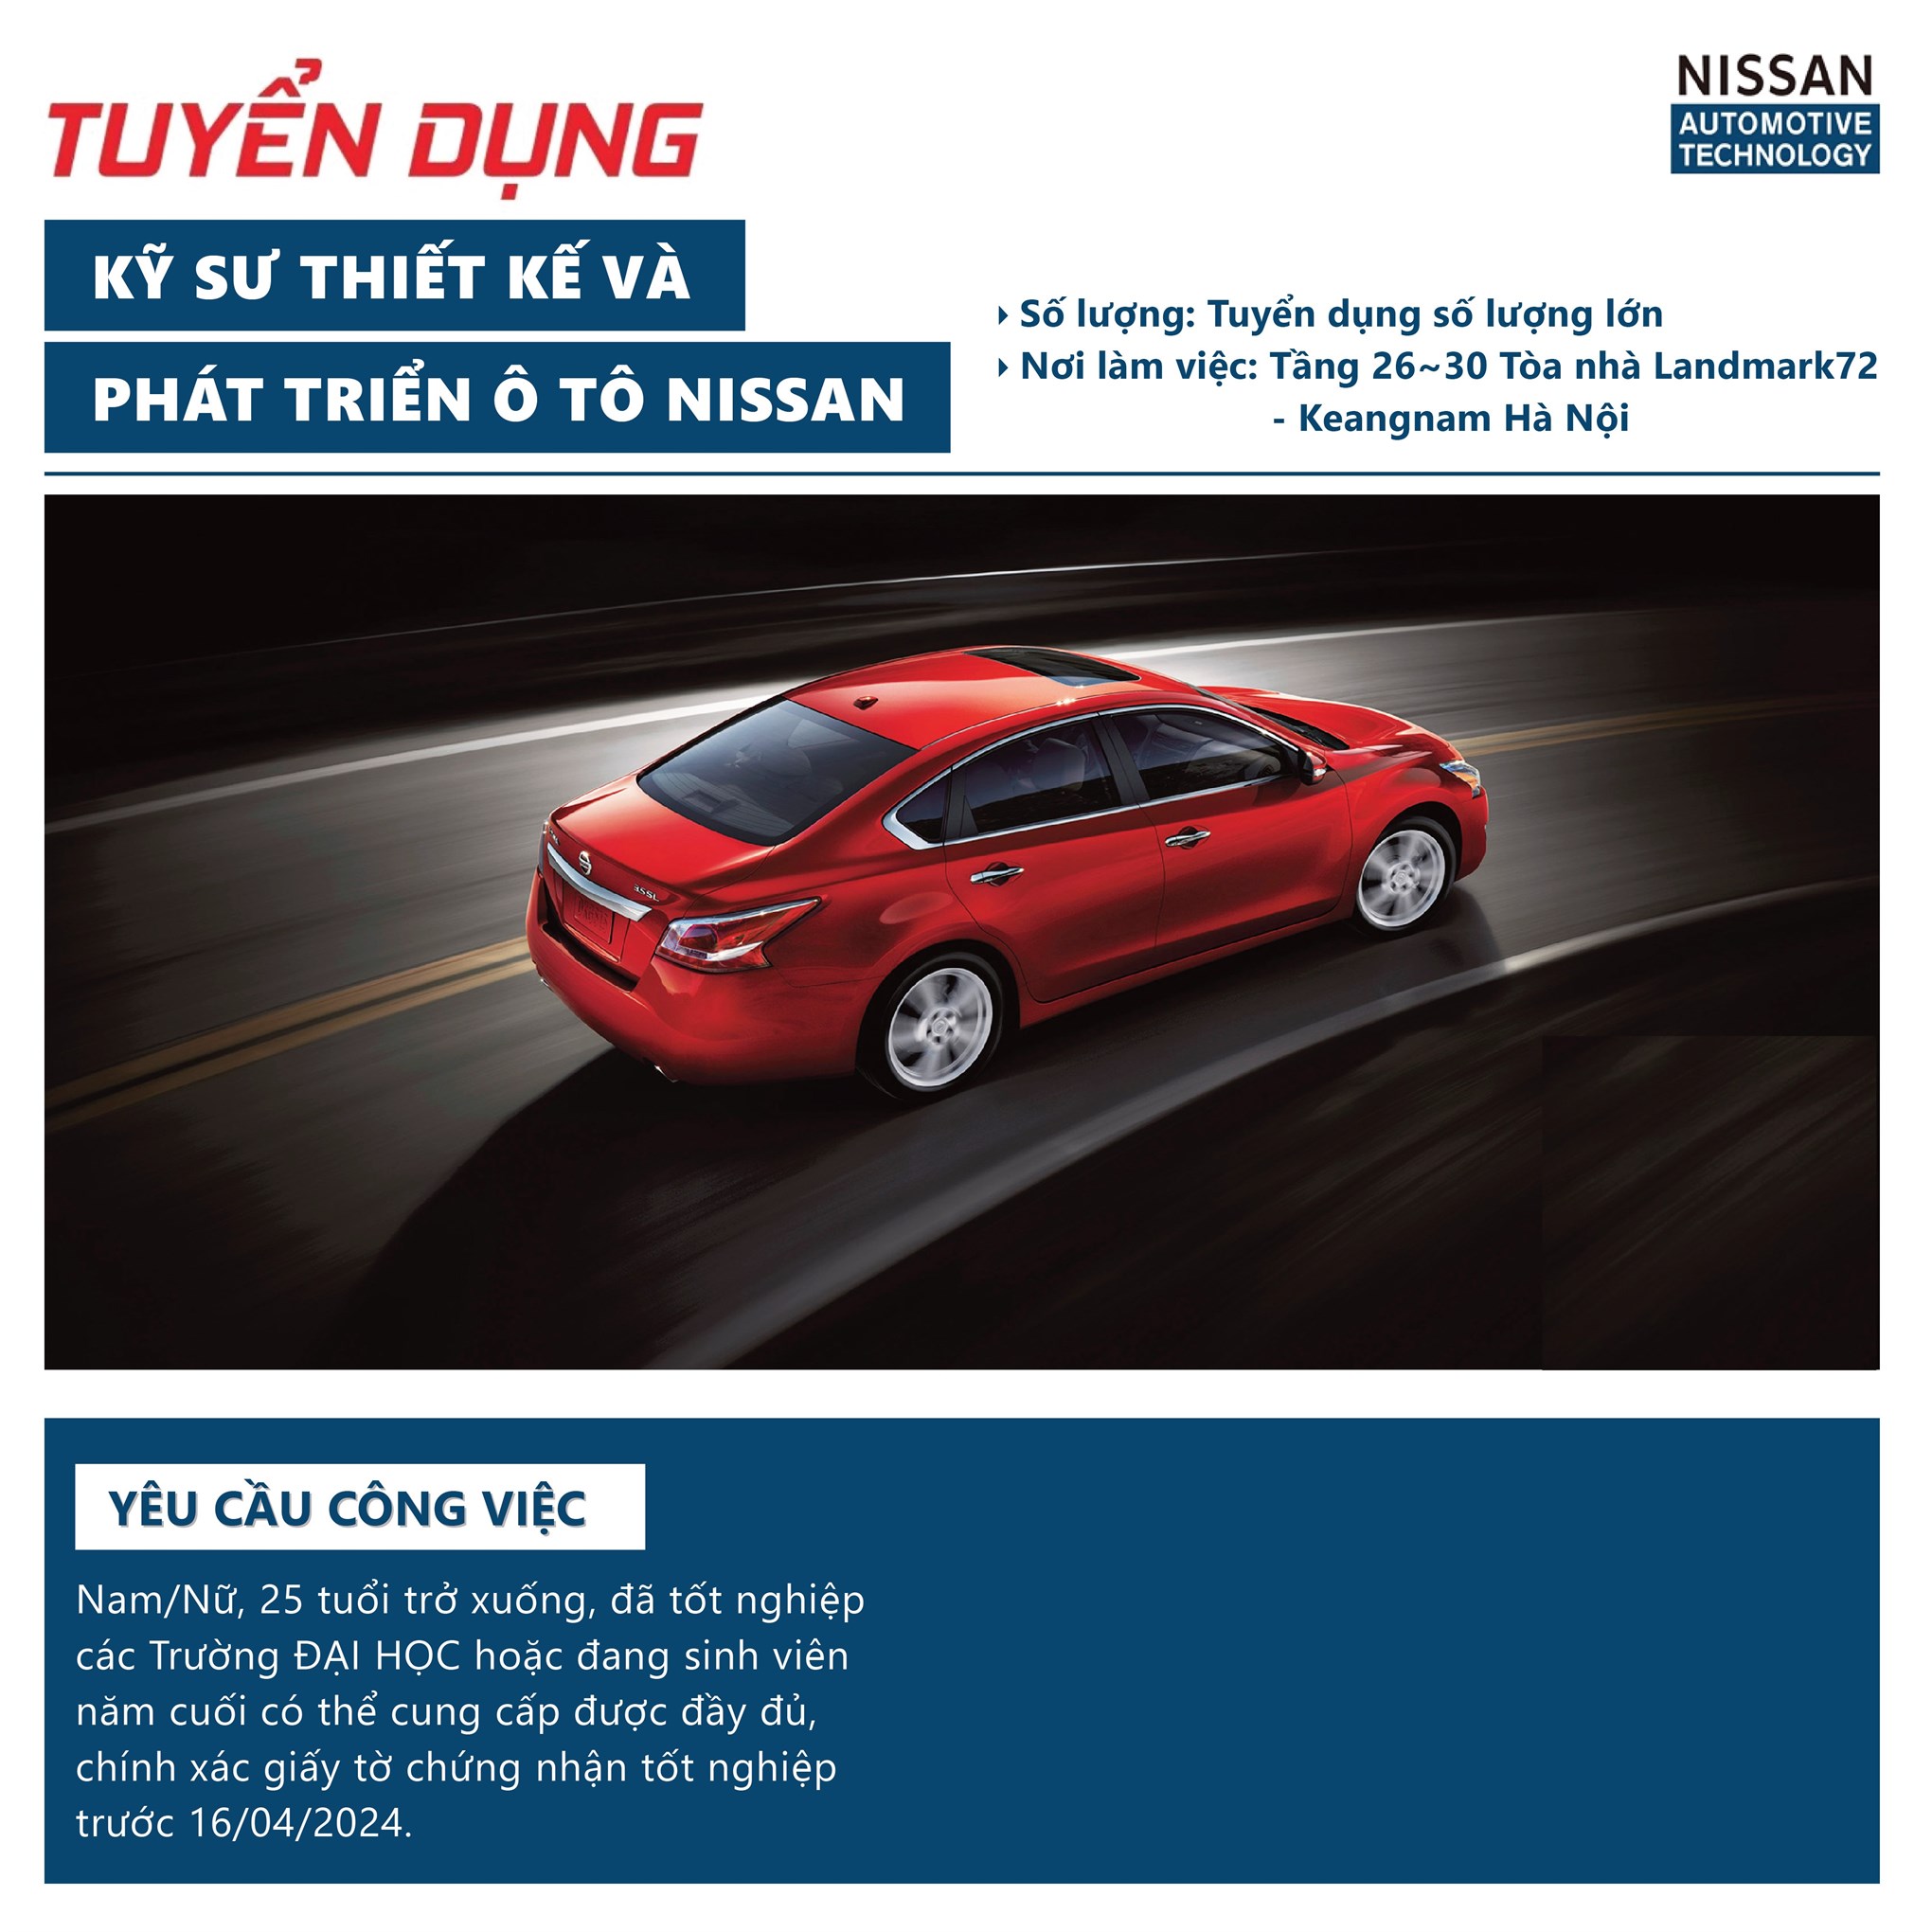 Thông báo tổ chức chương trình thi tuyển tại trường của Công ty TNHH Nissan Automotive Technology Việt Nam